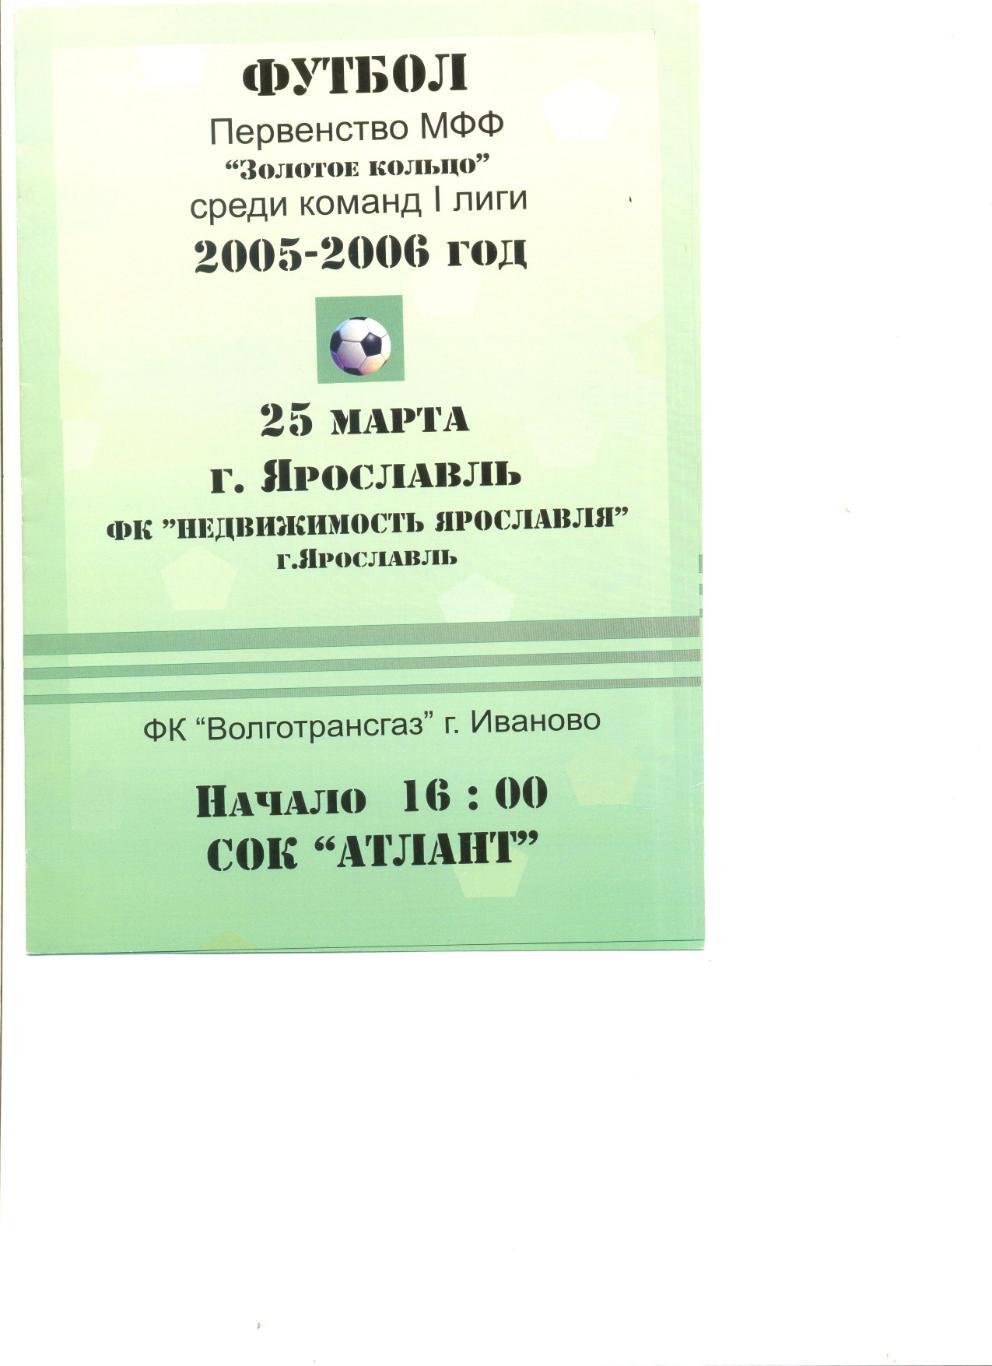 ФК Недвижимость Ярославля - Волгатрансгаз Иваново 25.03.2006 г.